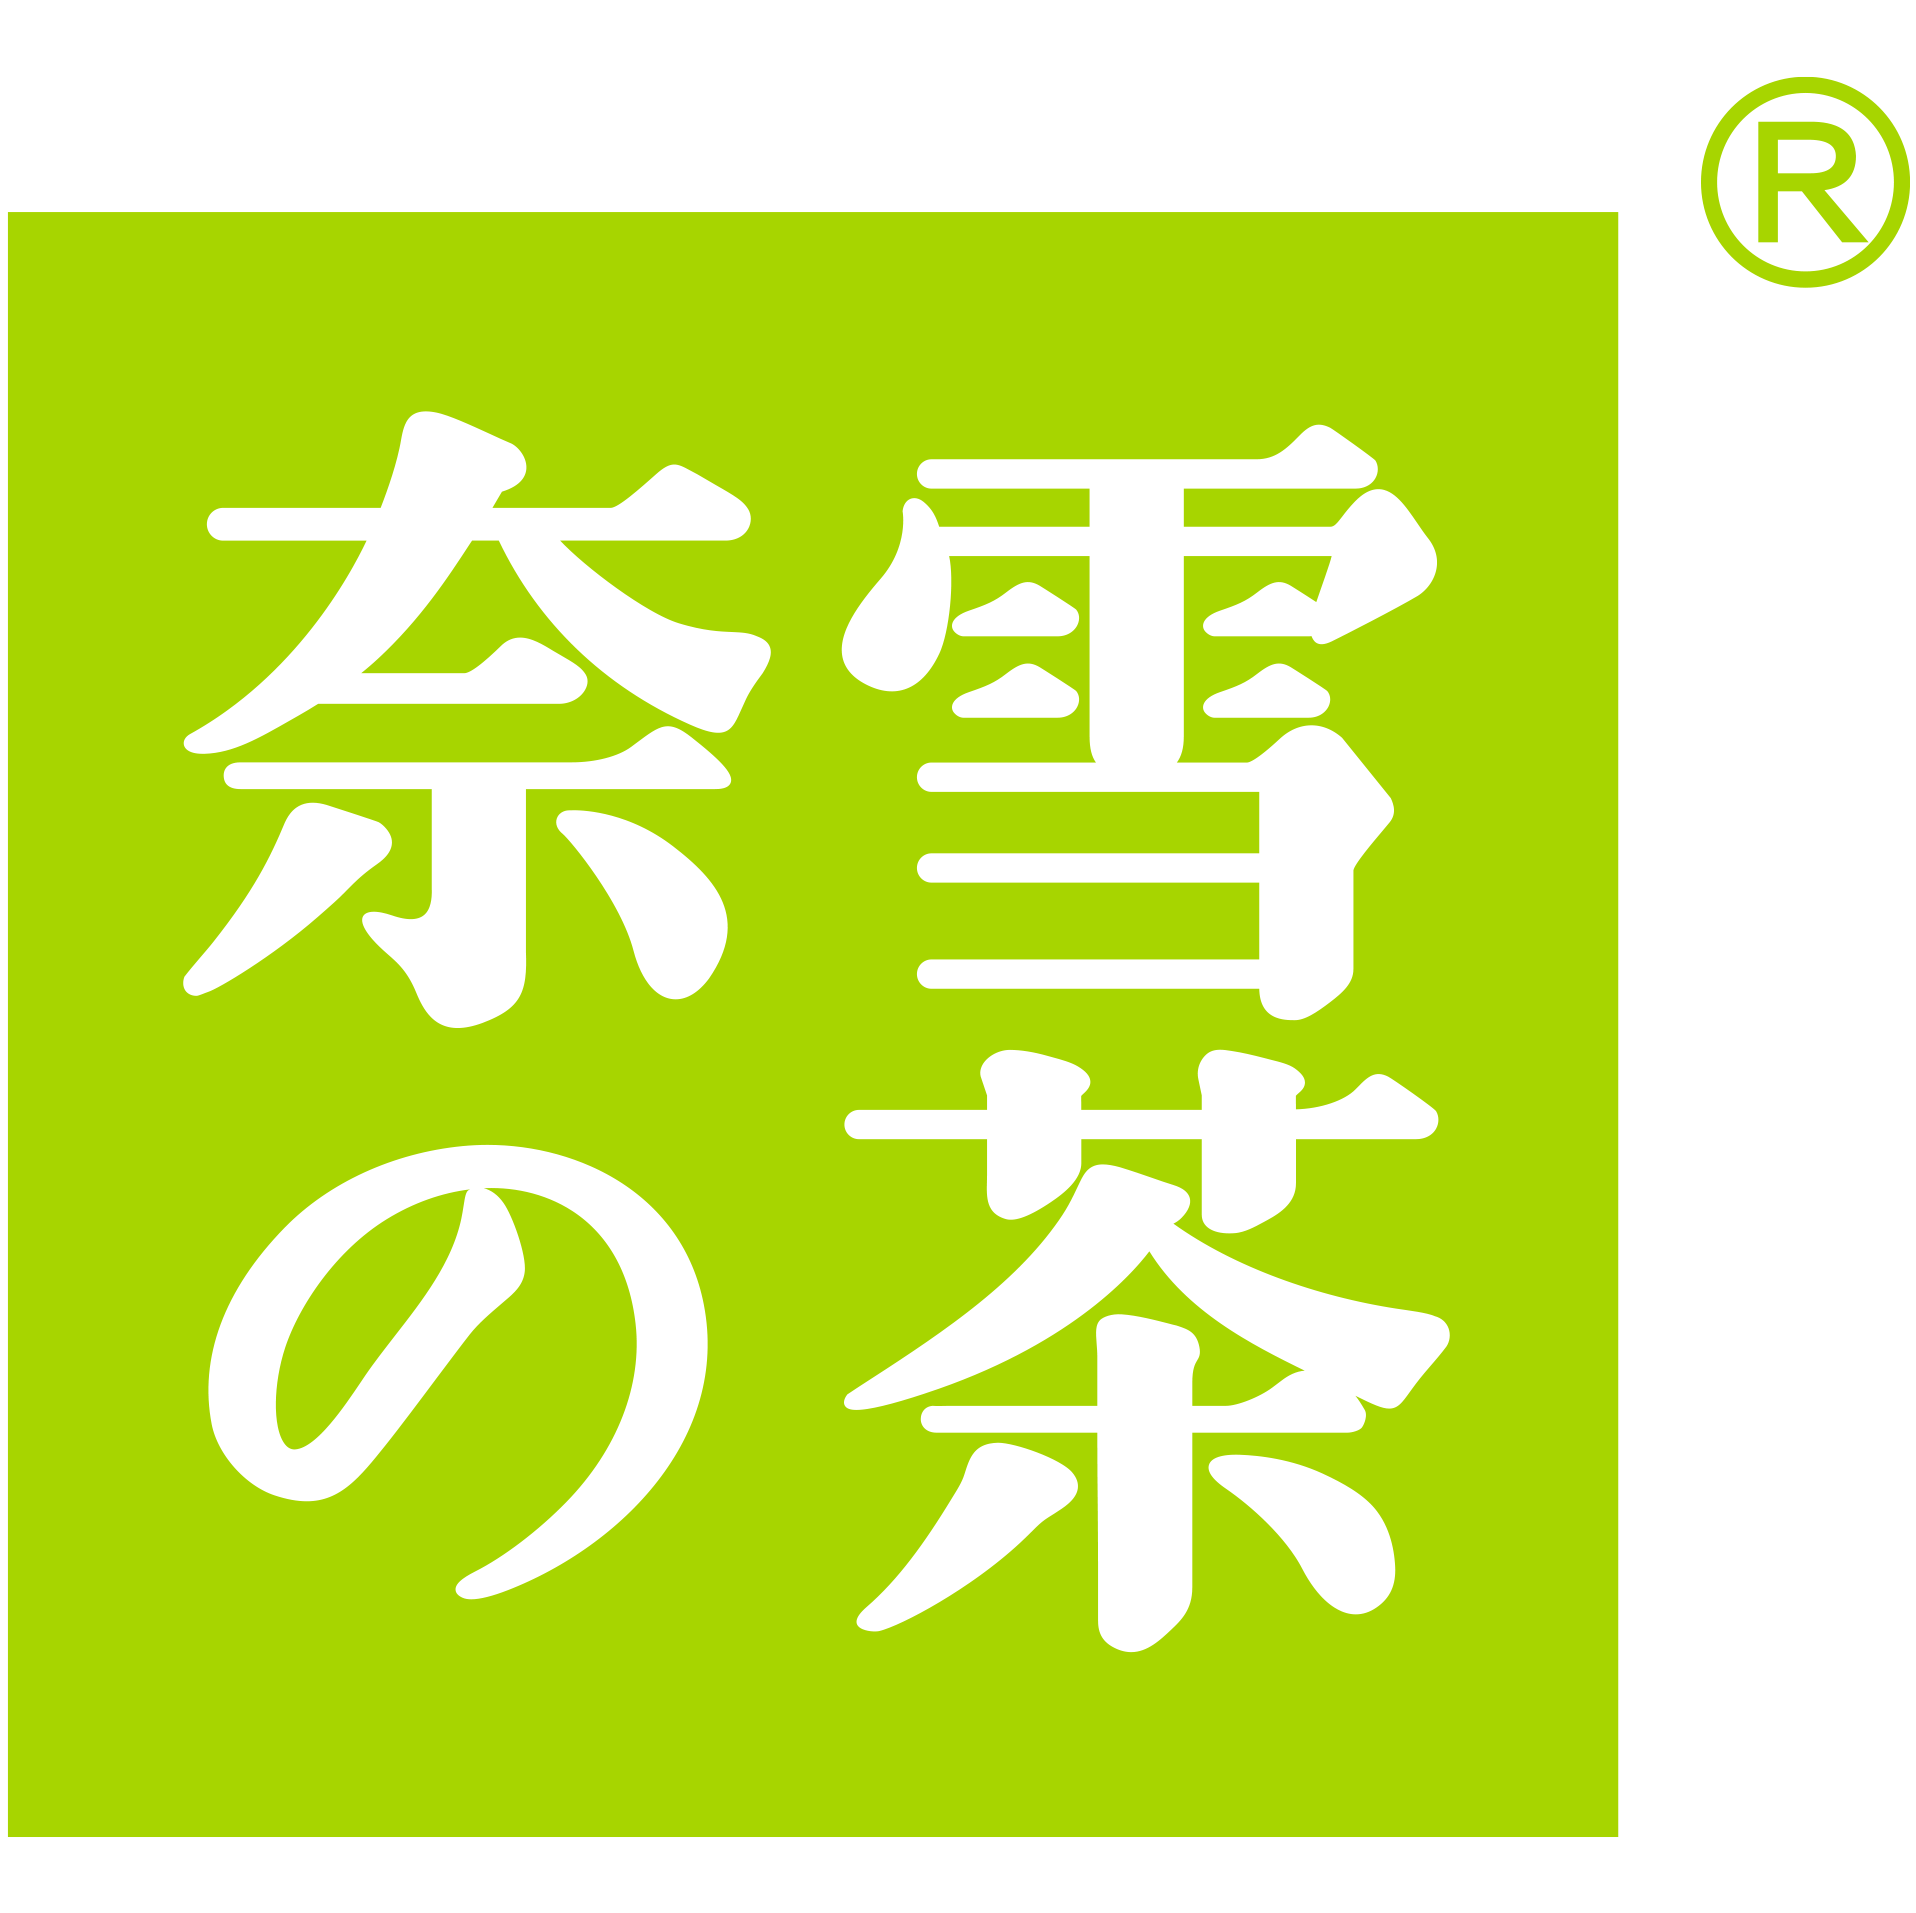 奈雪logo设计理念图片